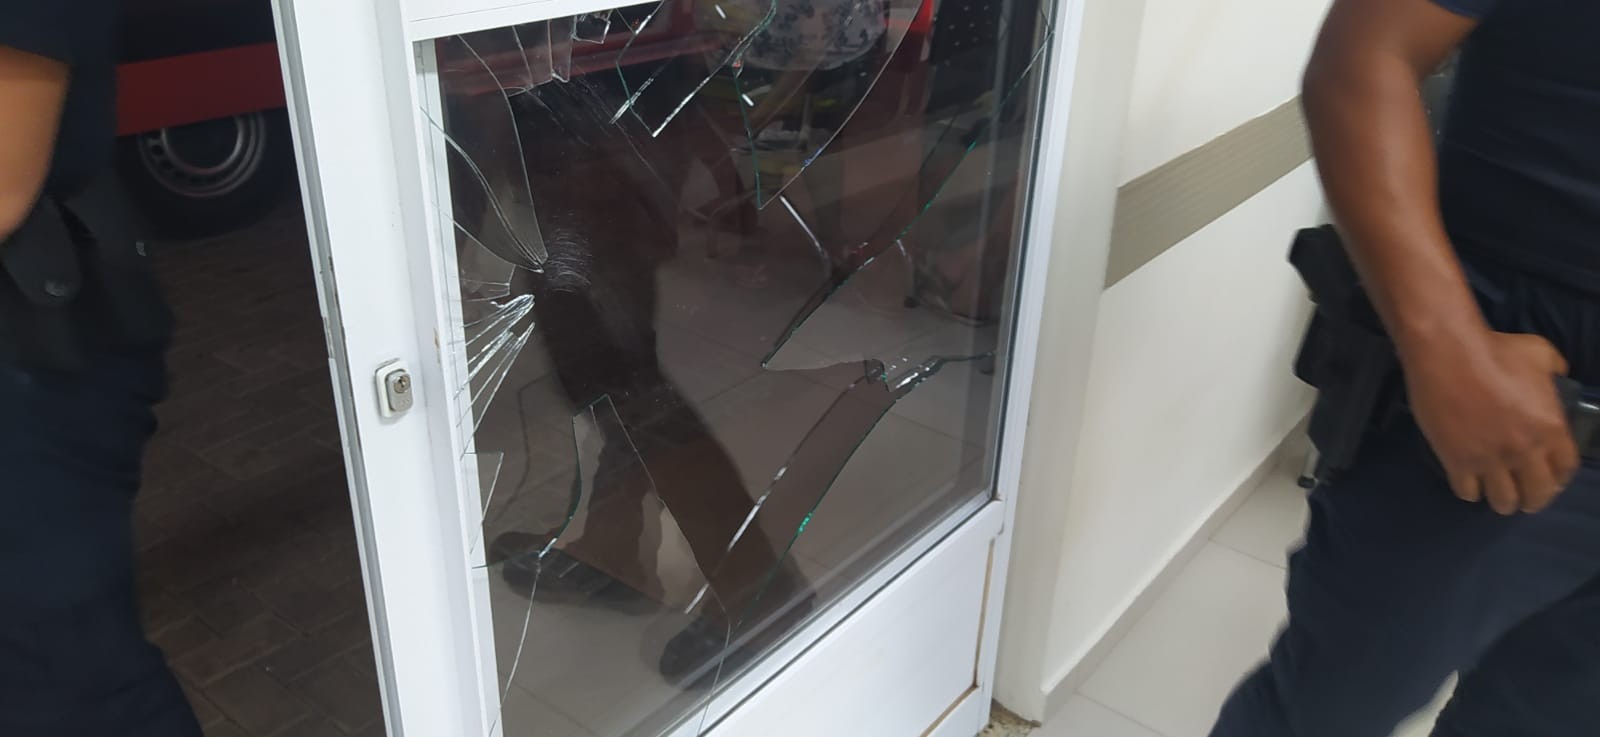 Jovem ofende funcionária e quebra porta de vidro em UPA de Rio Preto